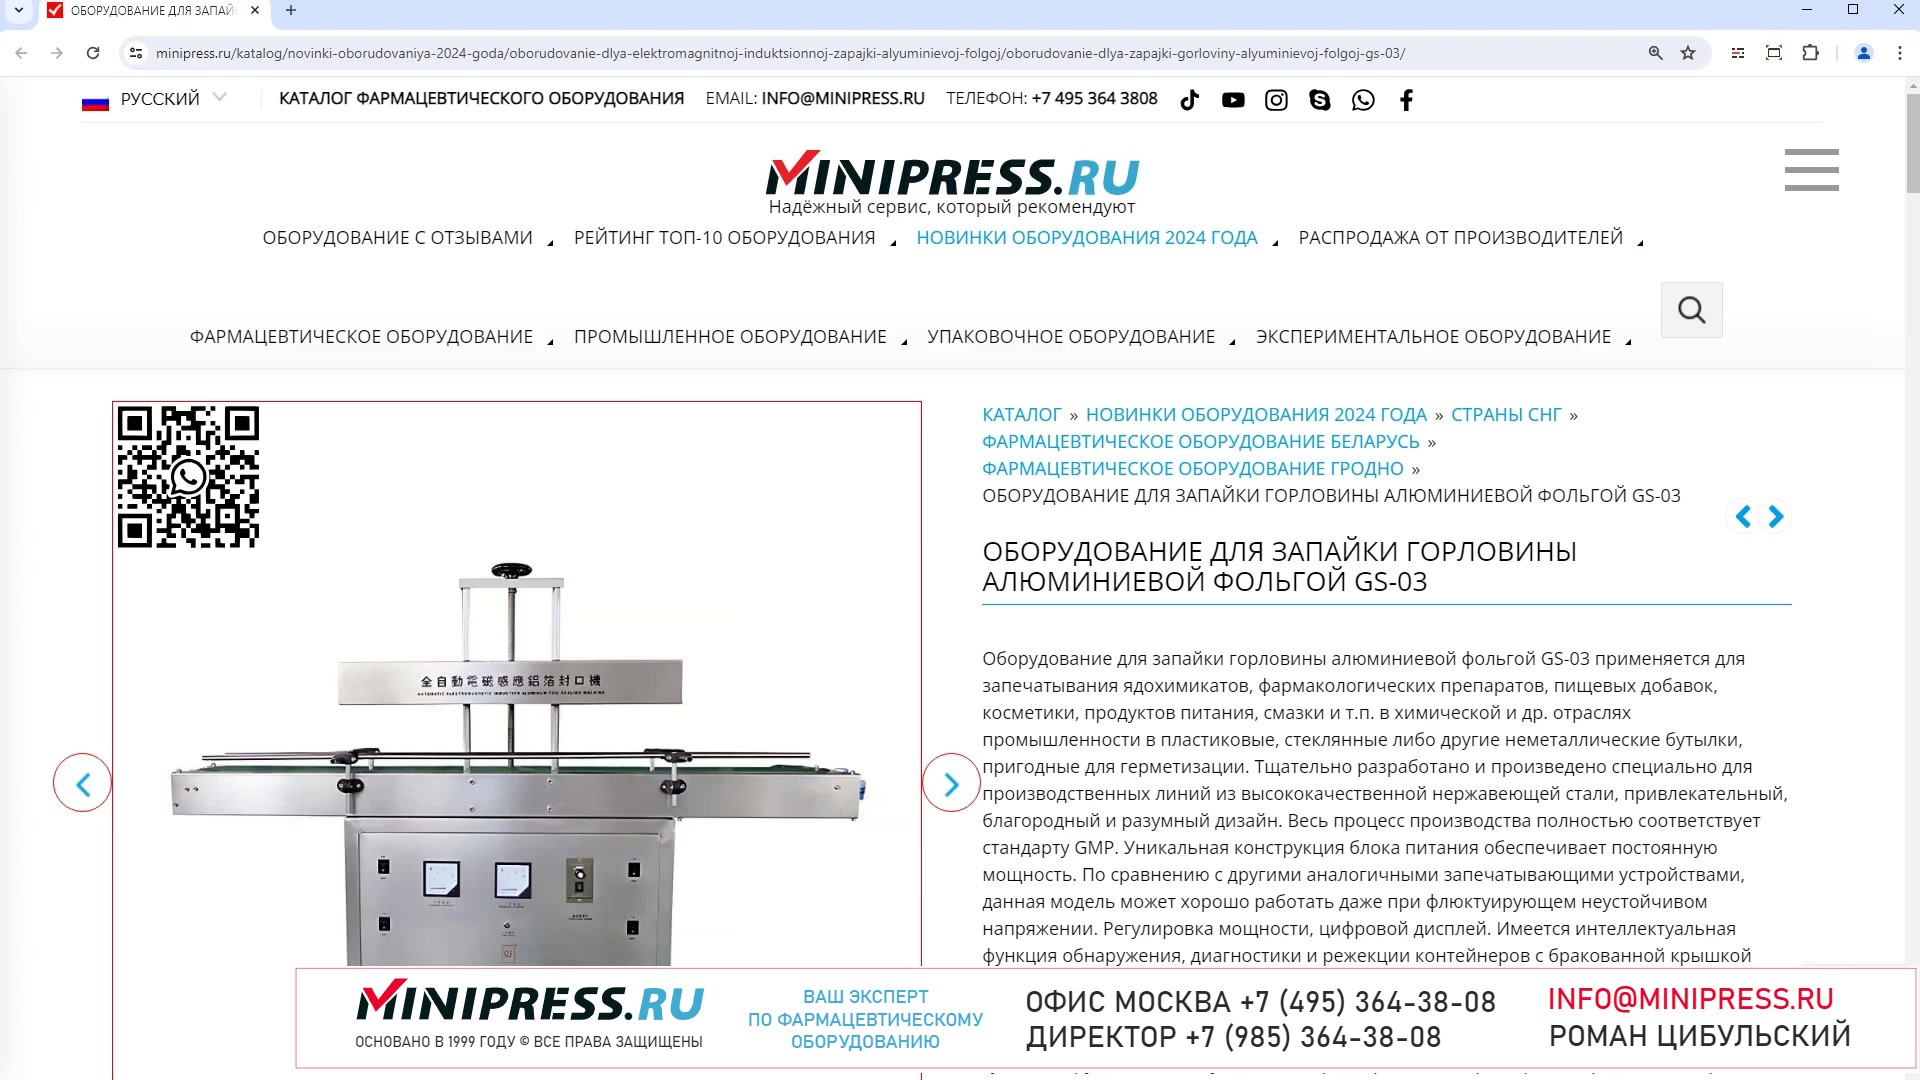 Minipress.ru Оборудование для запайки горловины алюминиевой фольгой GS-03